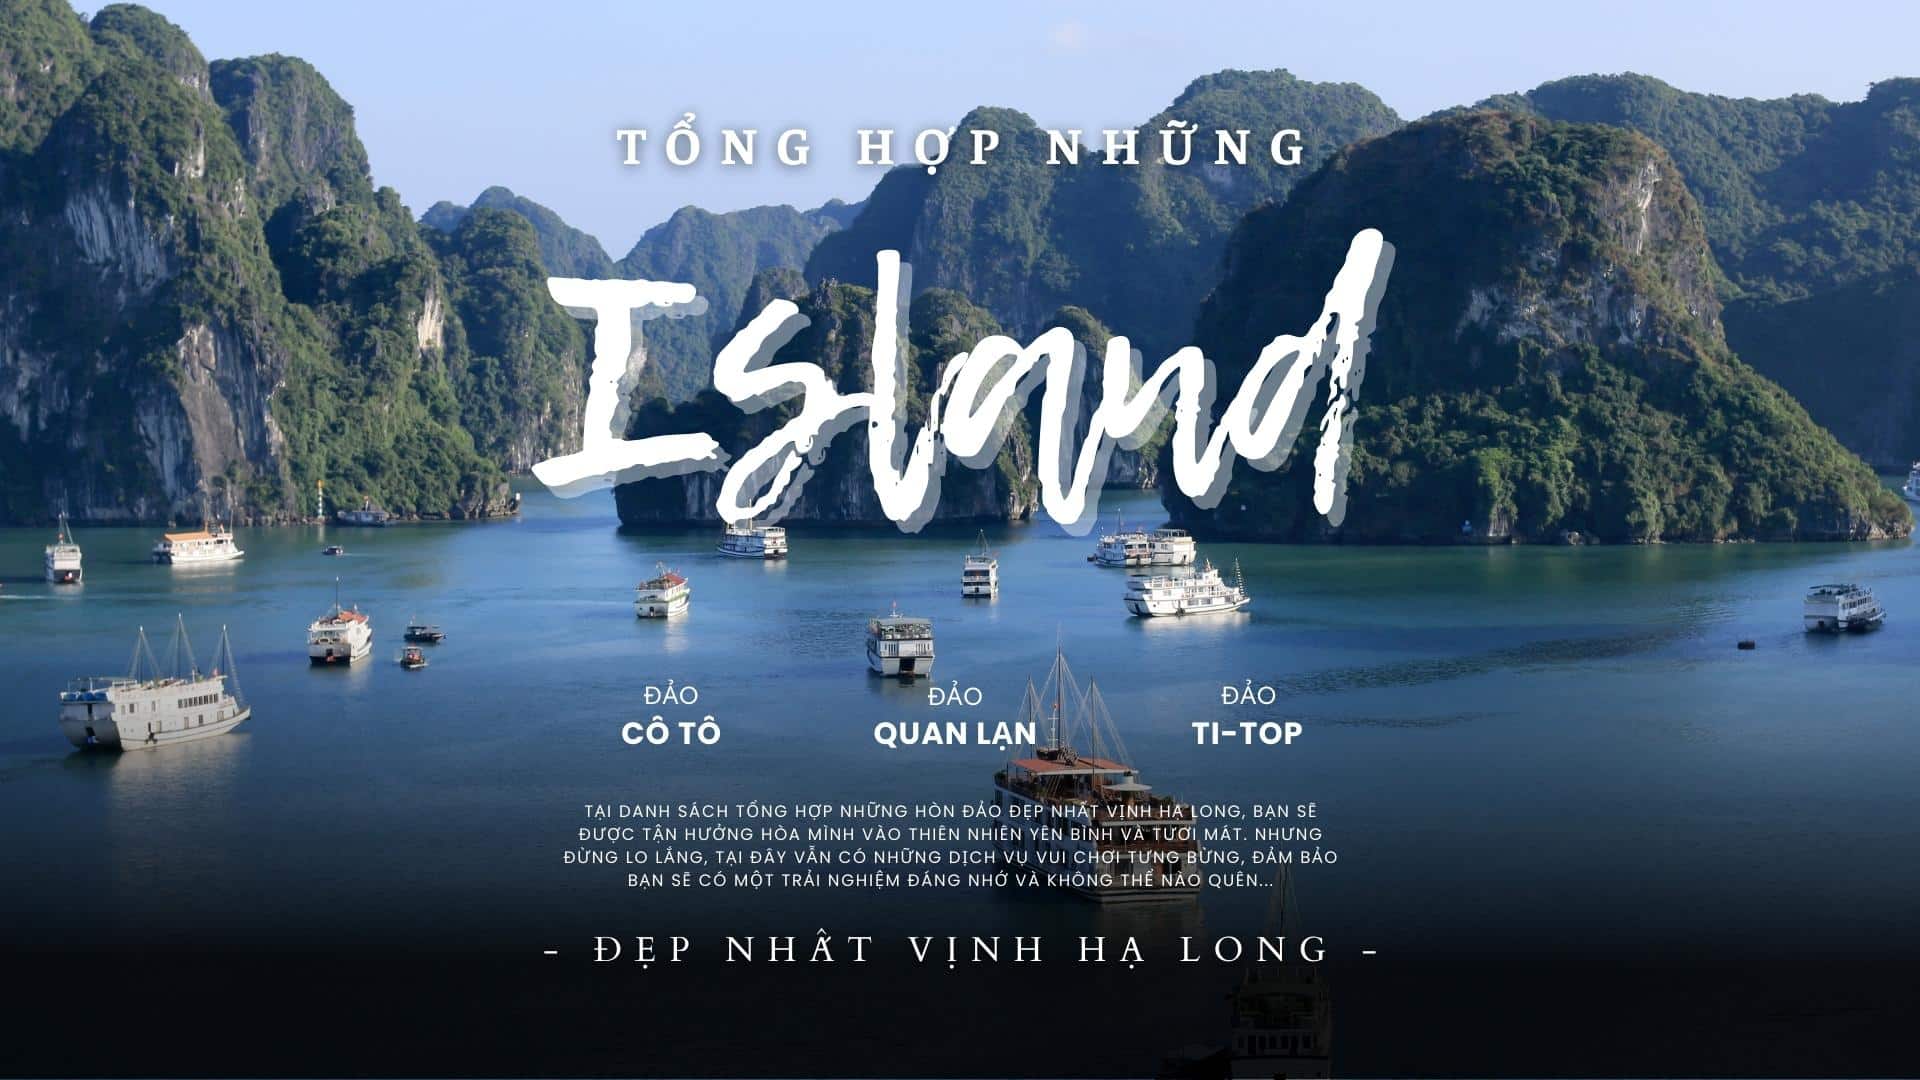 Mở rộng ranh giới di sản Vịnh Hạ Long - Quần đảo Cát Bà 2023 | Tổng hợp những hòn đảo đẹp nhất vịnh Hạ Long năm 2023